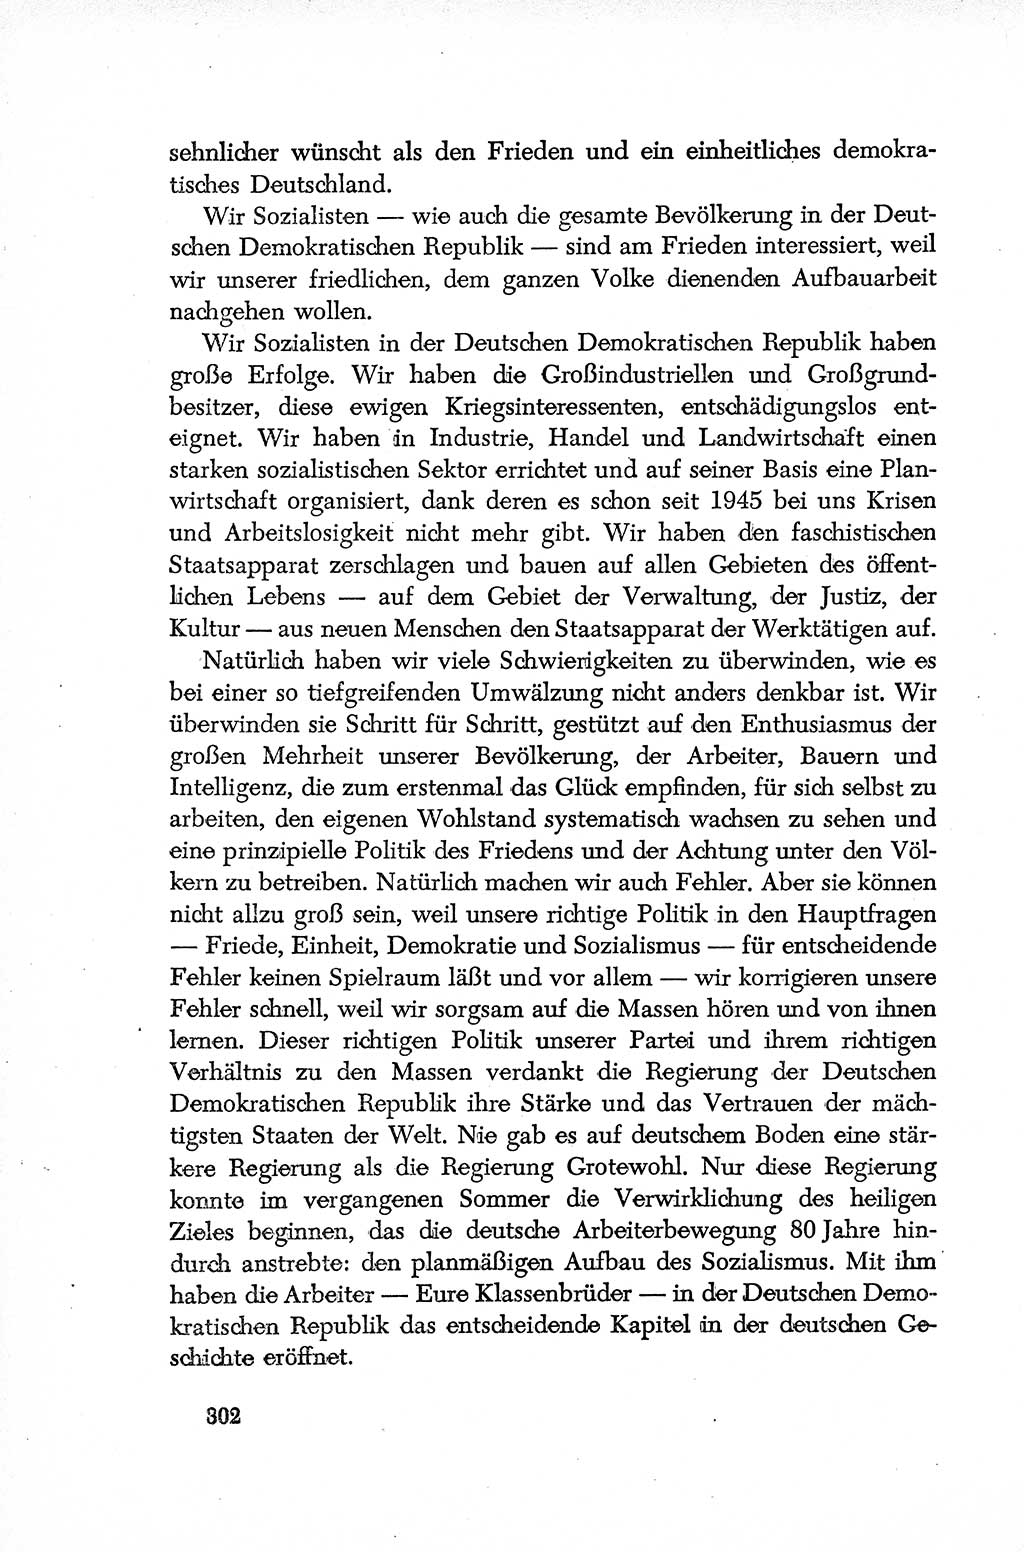 Dokumente der Sozialistischen Einheitspartei Deutschlands (SED) [Deutsche Demokratische Republik (DDR)] 1952-1953, Seite 302 (Dok. SED DDR 1952-1953, S. 302)